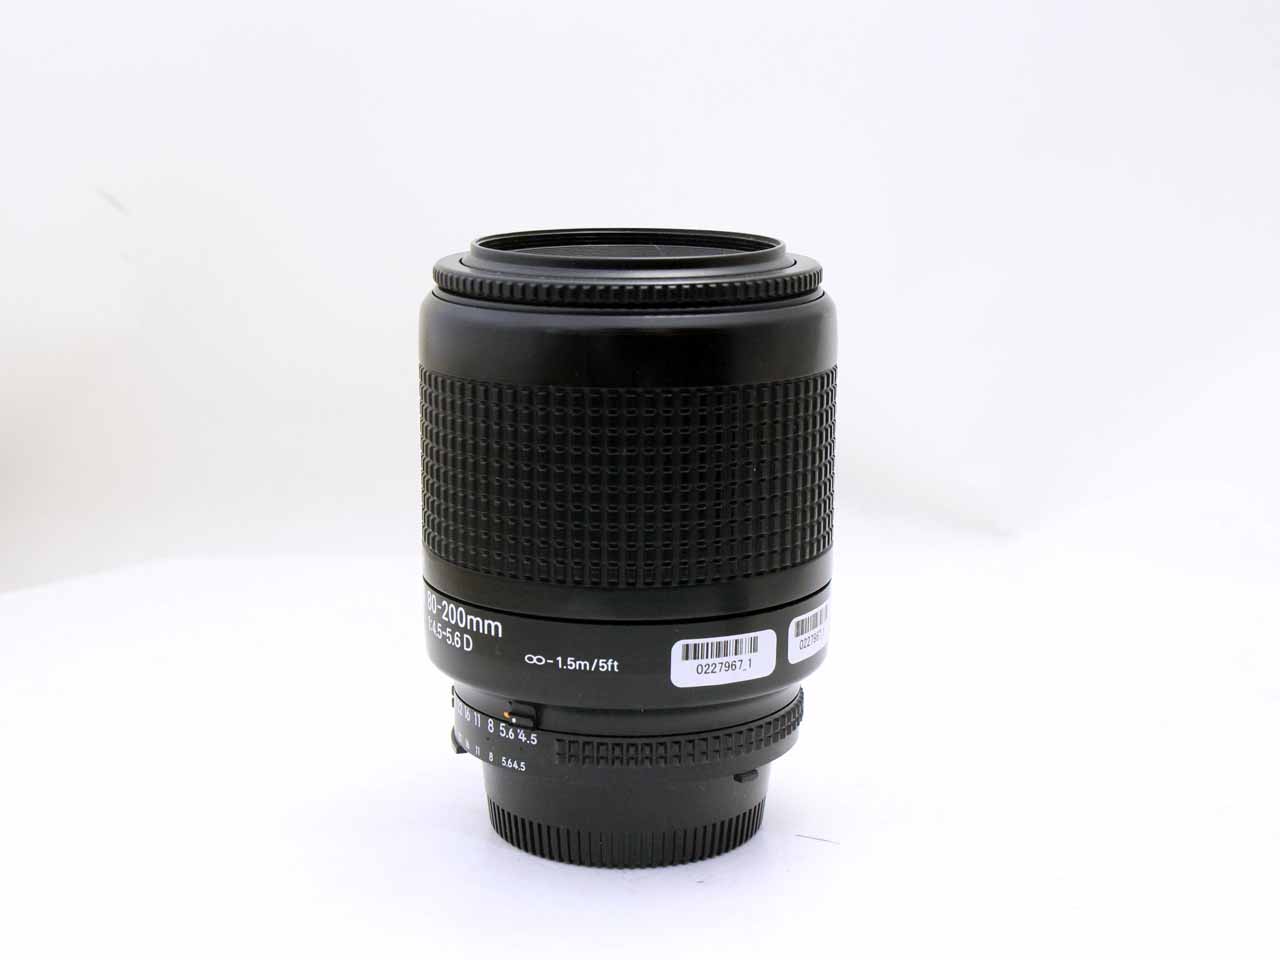 トップカメラオンライン / ニコン(nikon) Ai AF Zoom Nikkor 80-200mm F4.5-5.6D